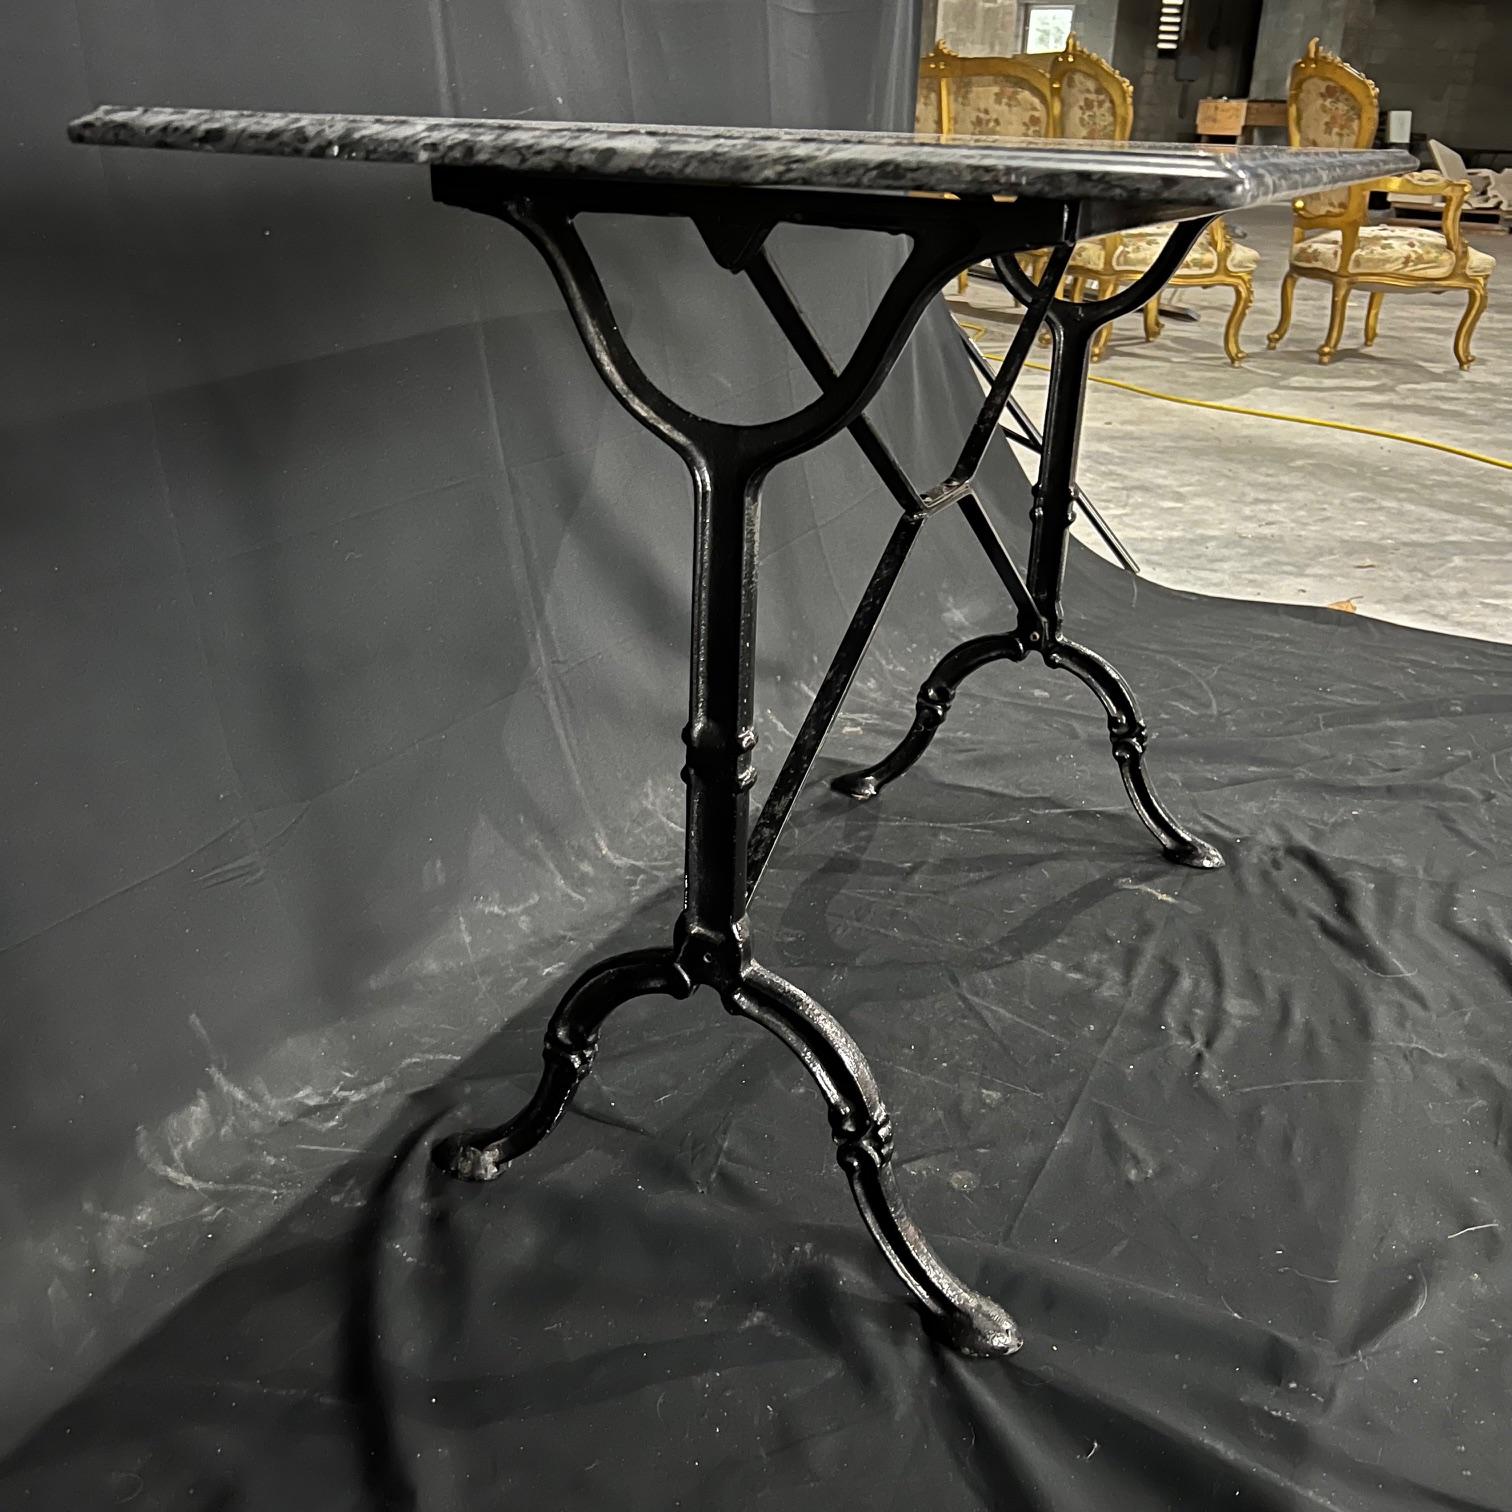 Table de café ou bureau rectangulaire polyvalente à plateau de marbre français, avec une base classique en fer noir provençal. Le marbre est un superbe marbre noir veiné. L'une des extrémités présente quelques rayures dues à l'âge. Très beau bord